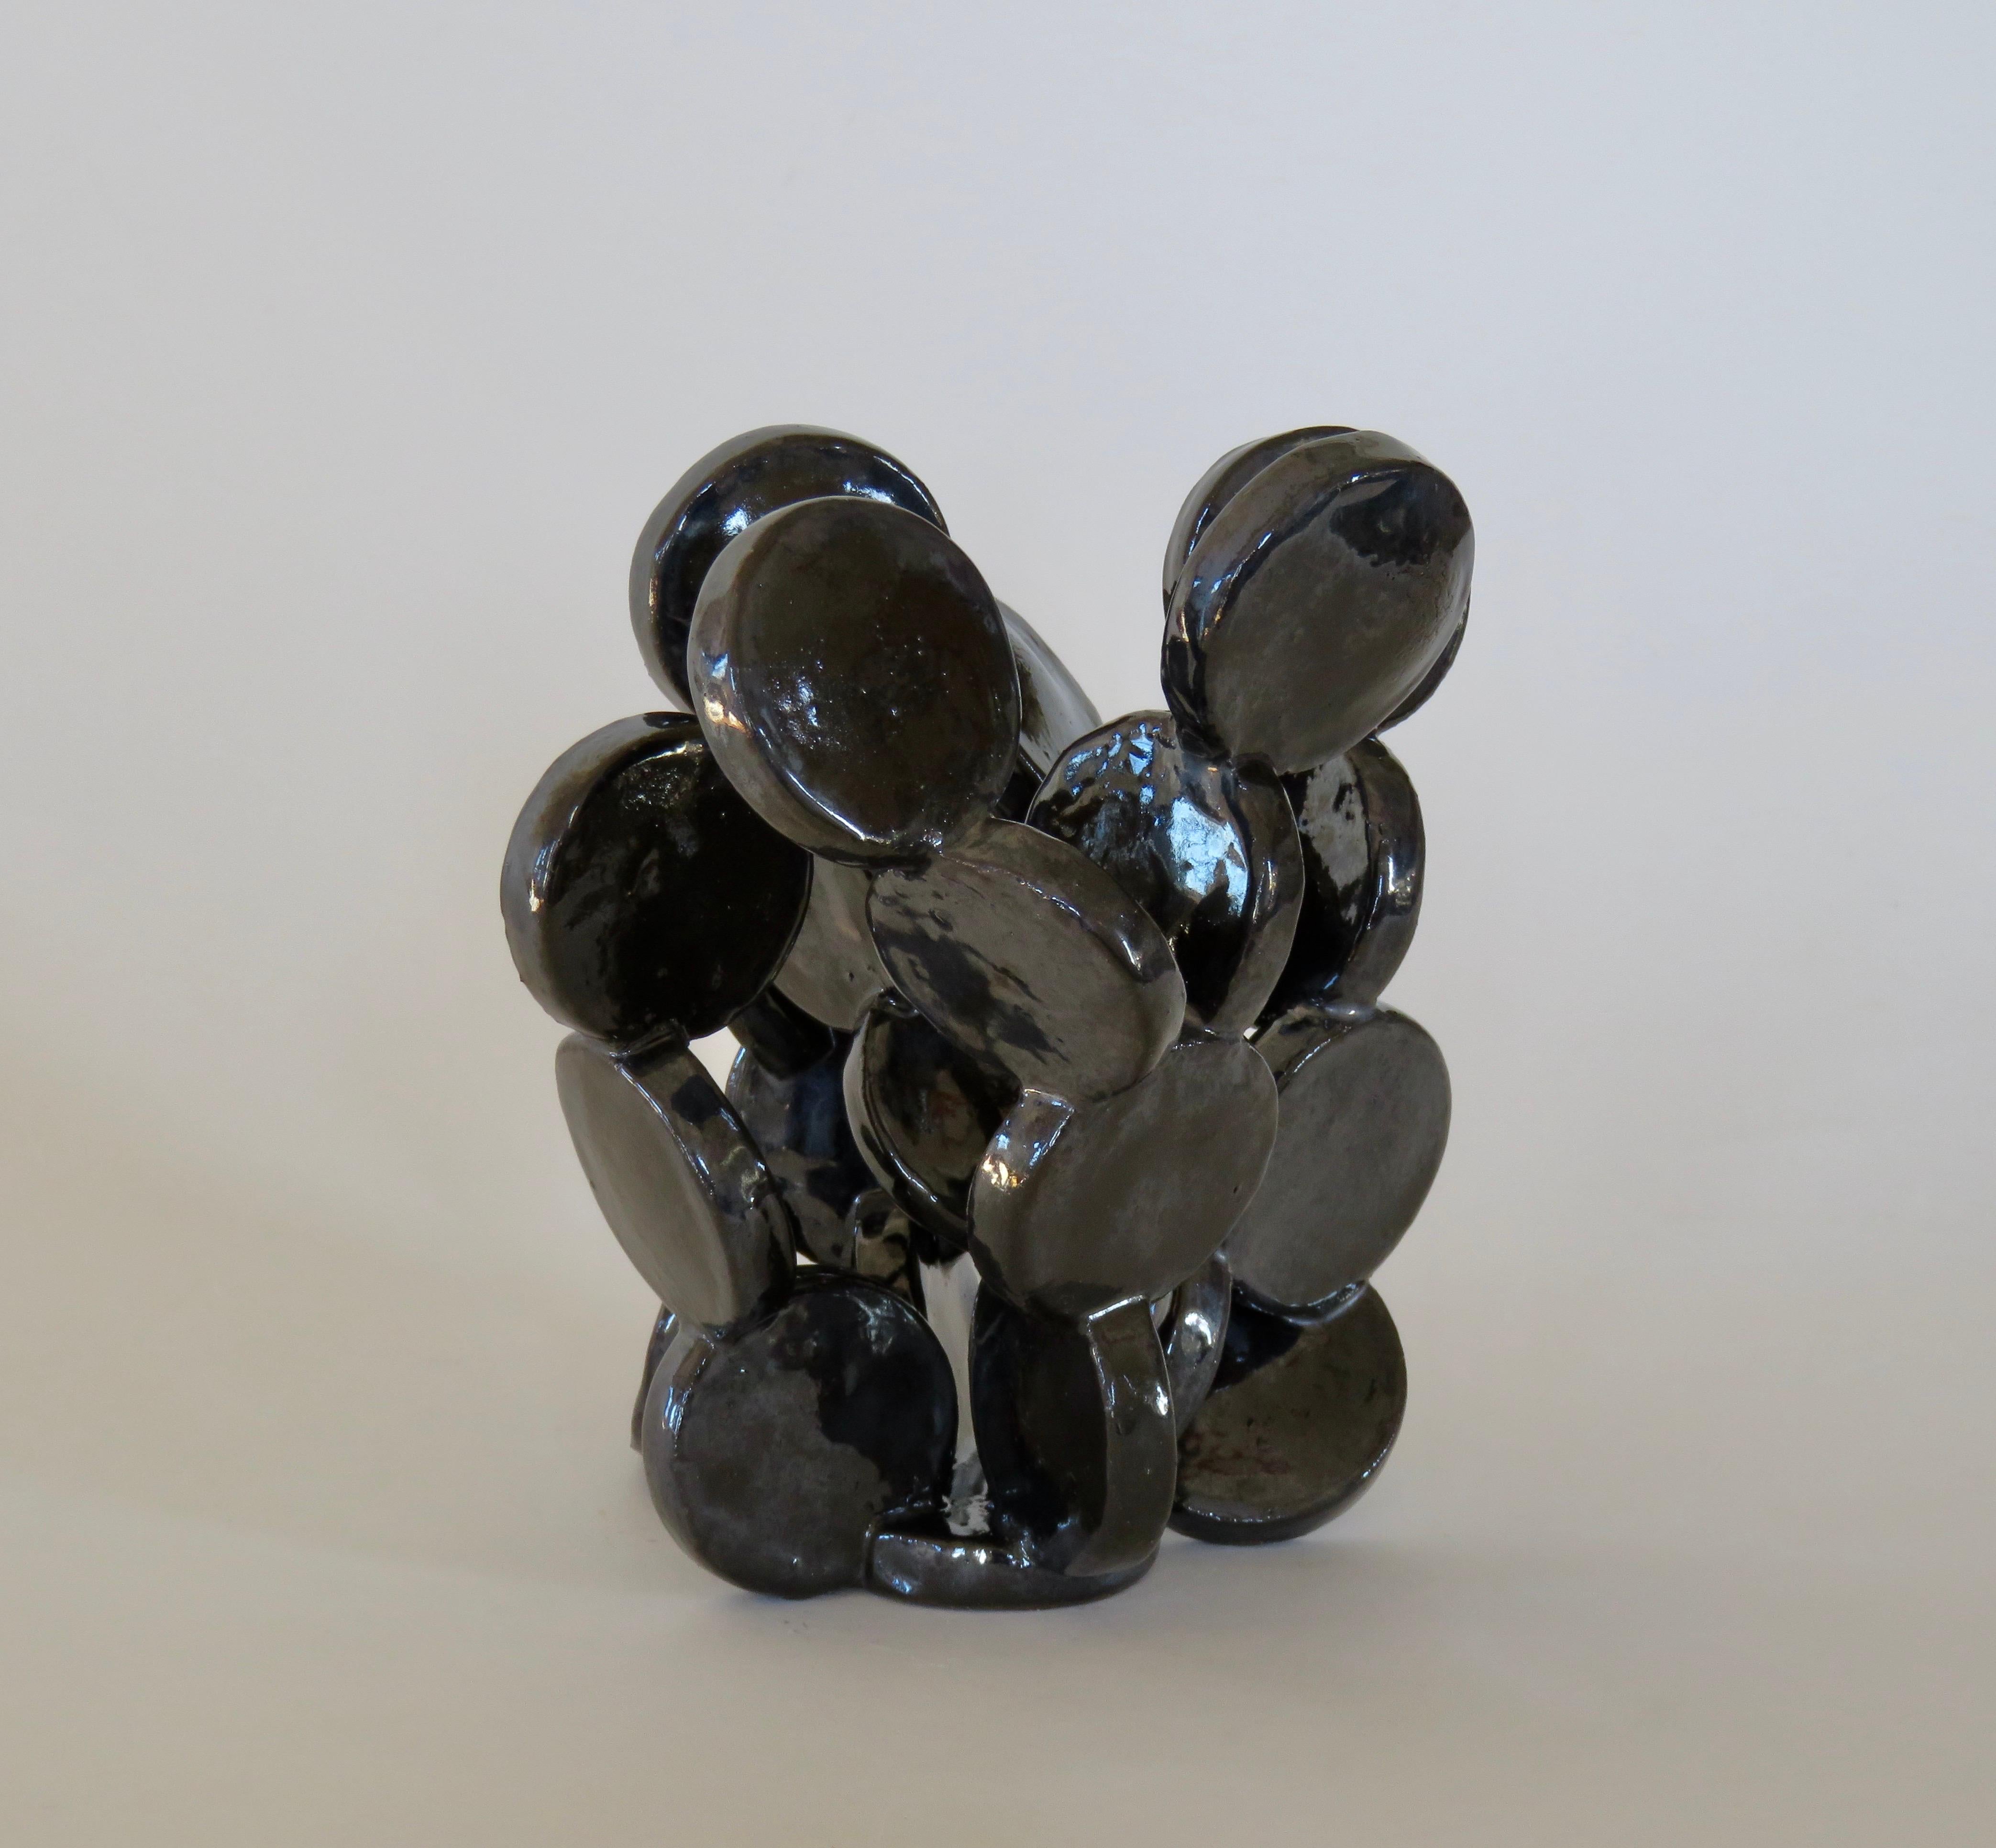 Shiny Black Discs, Handbuilt Abstract Ceramic Sculpture 1